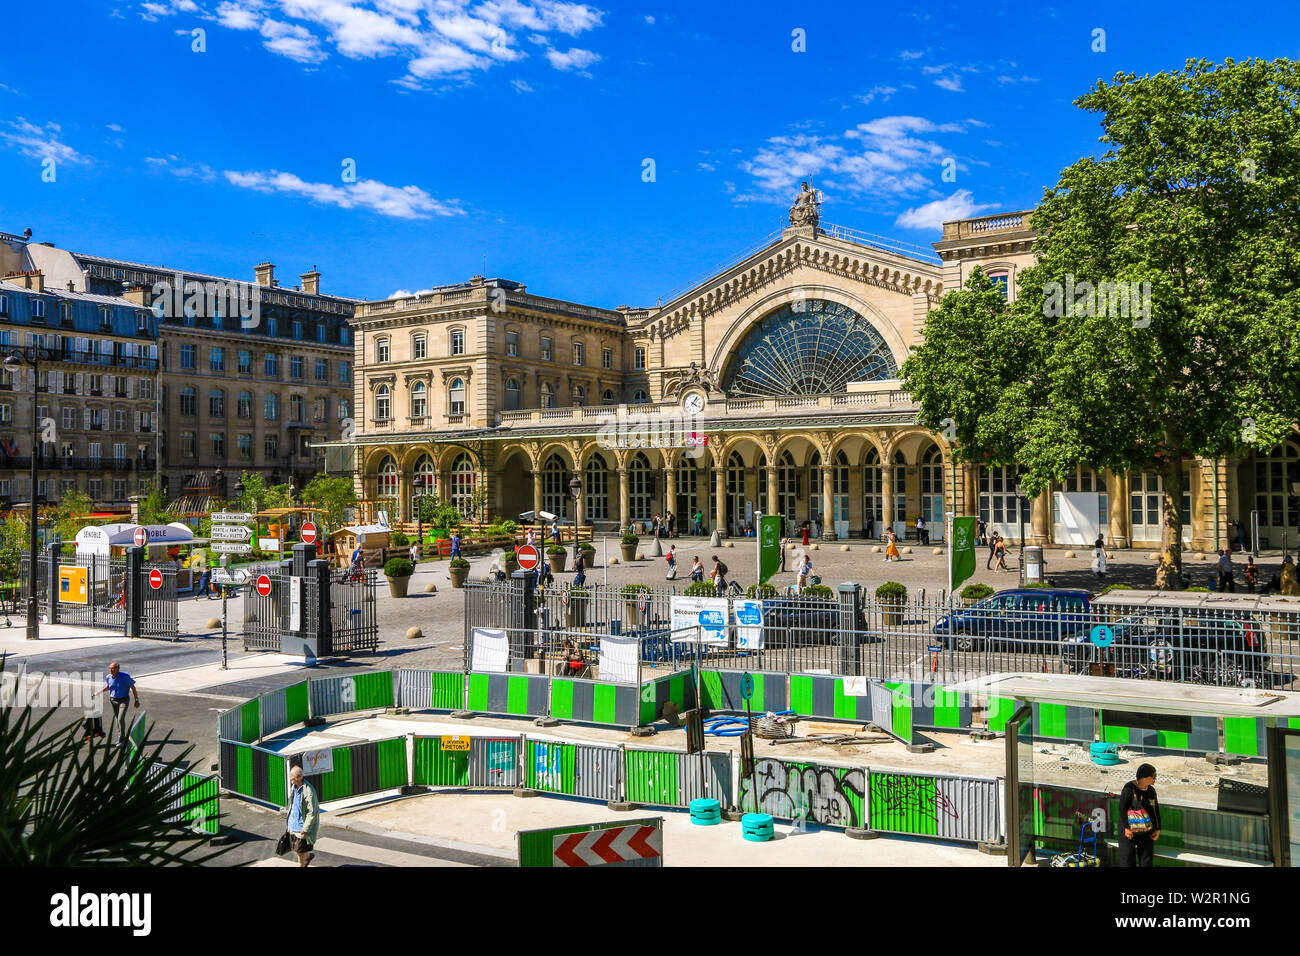 Tolle Aussicht auf den Bahnhof "Gare de l'Est oder Paris-Est mit einer Baustelle vor. Die Menschen sind zu Fuß von der Station auf einem... Stockfoto